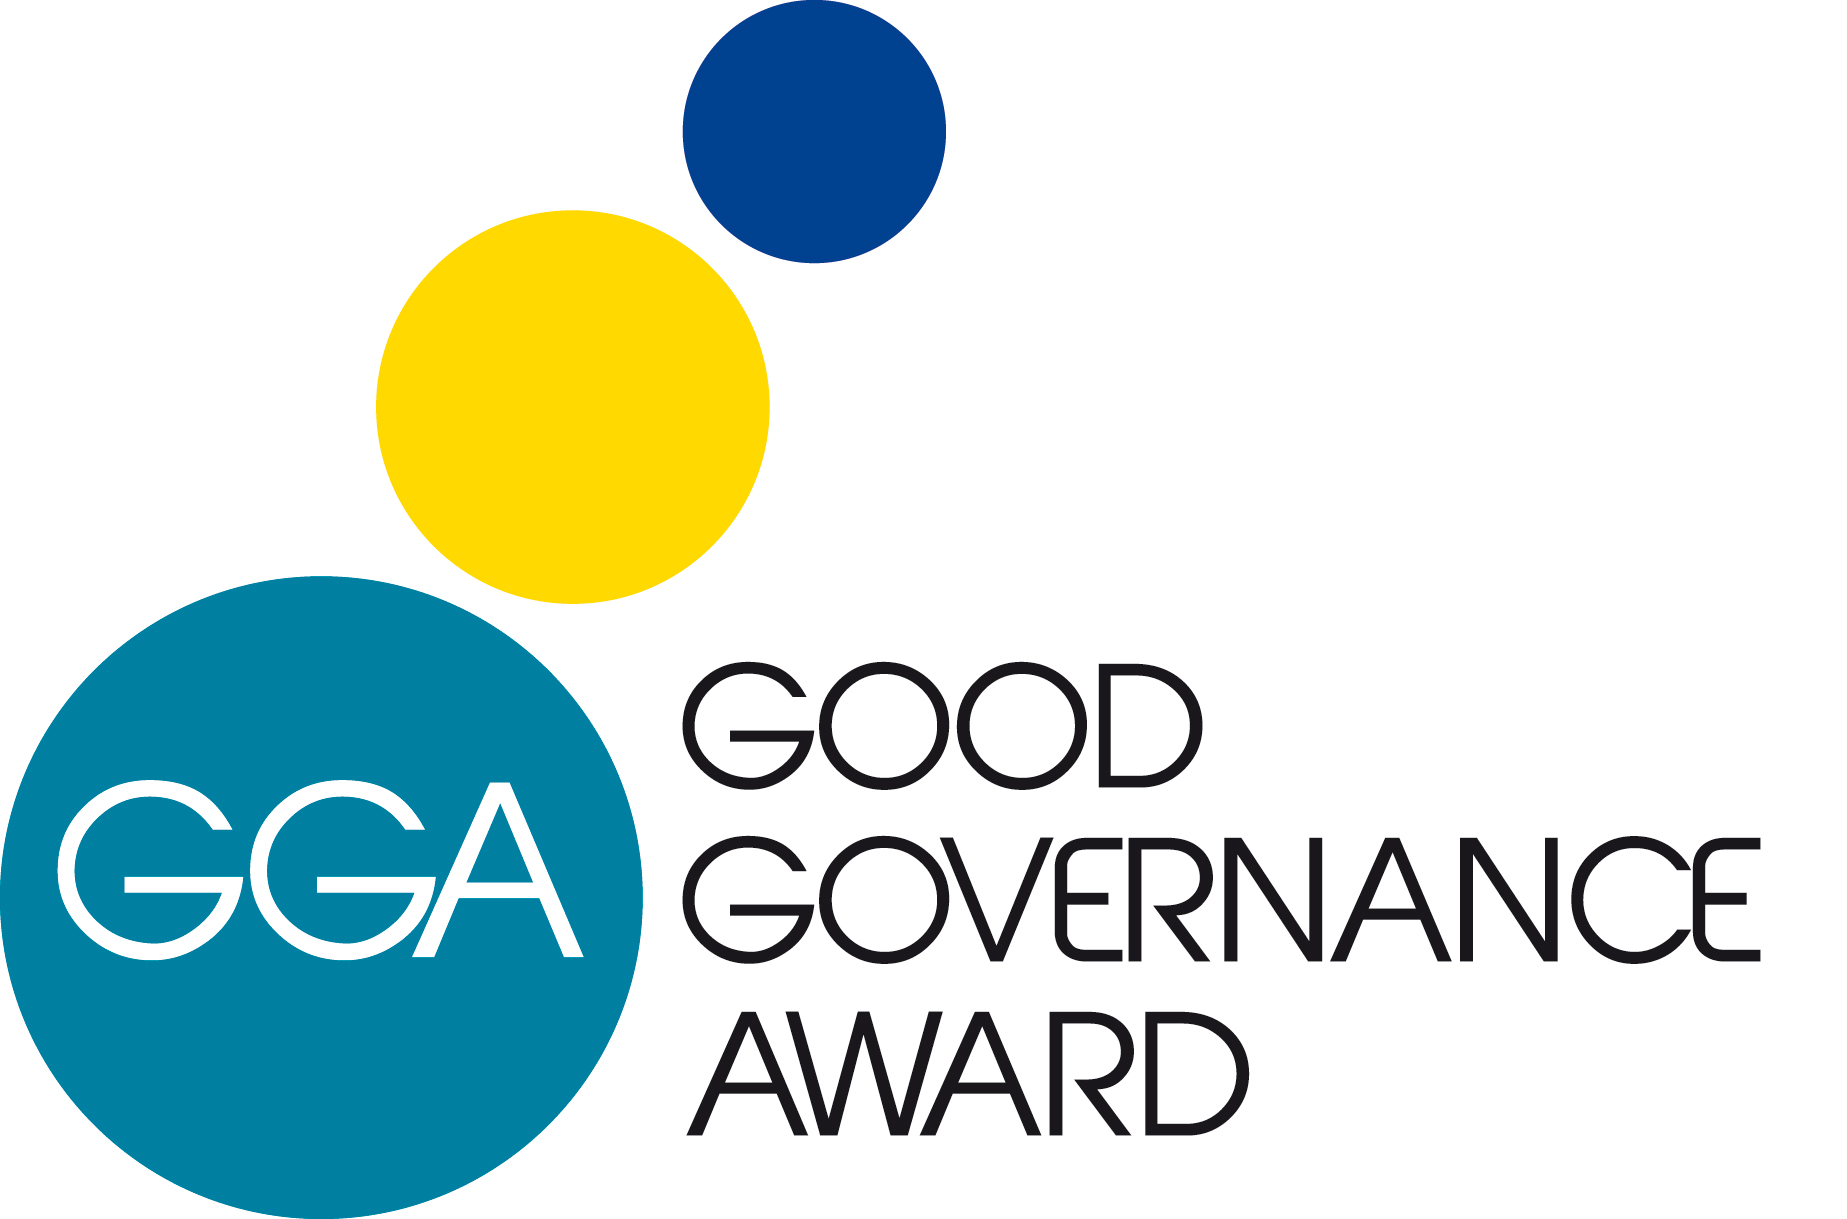 Good Governance Award Logo